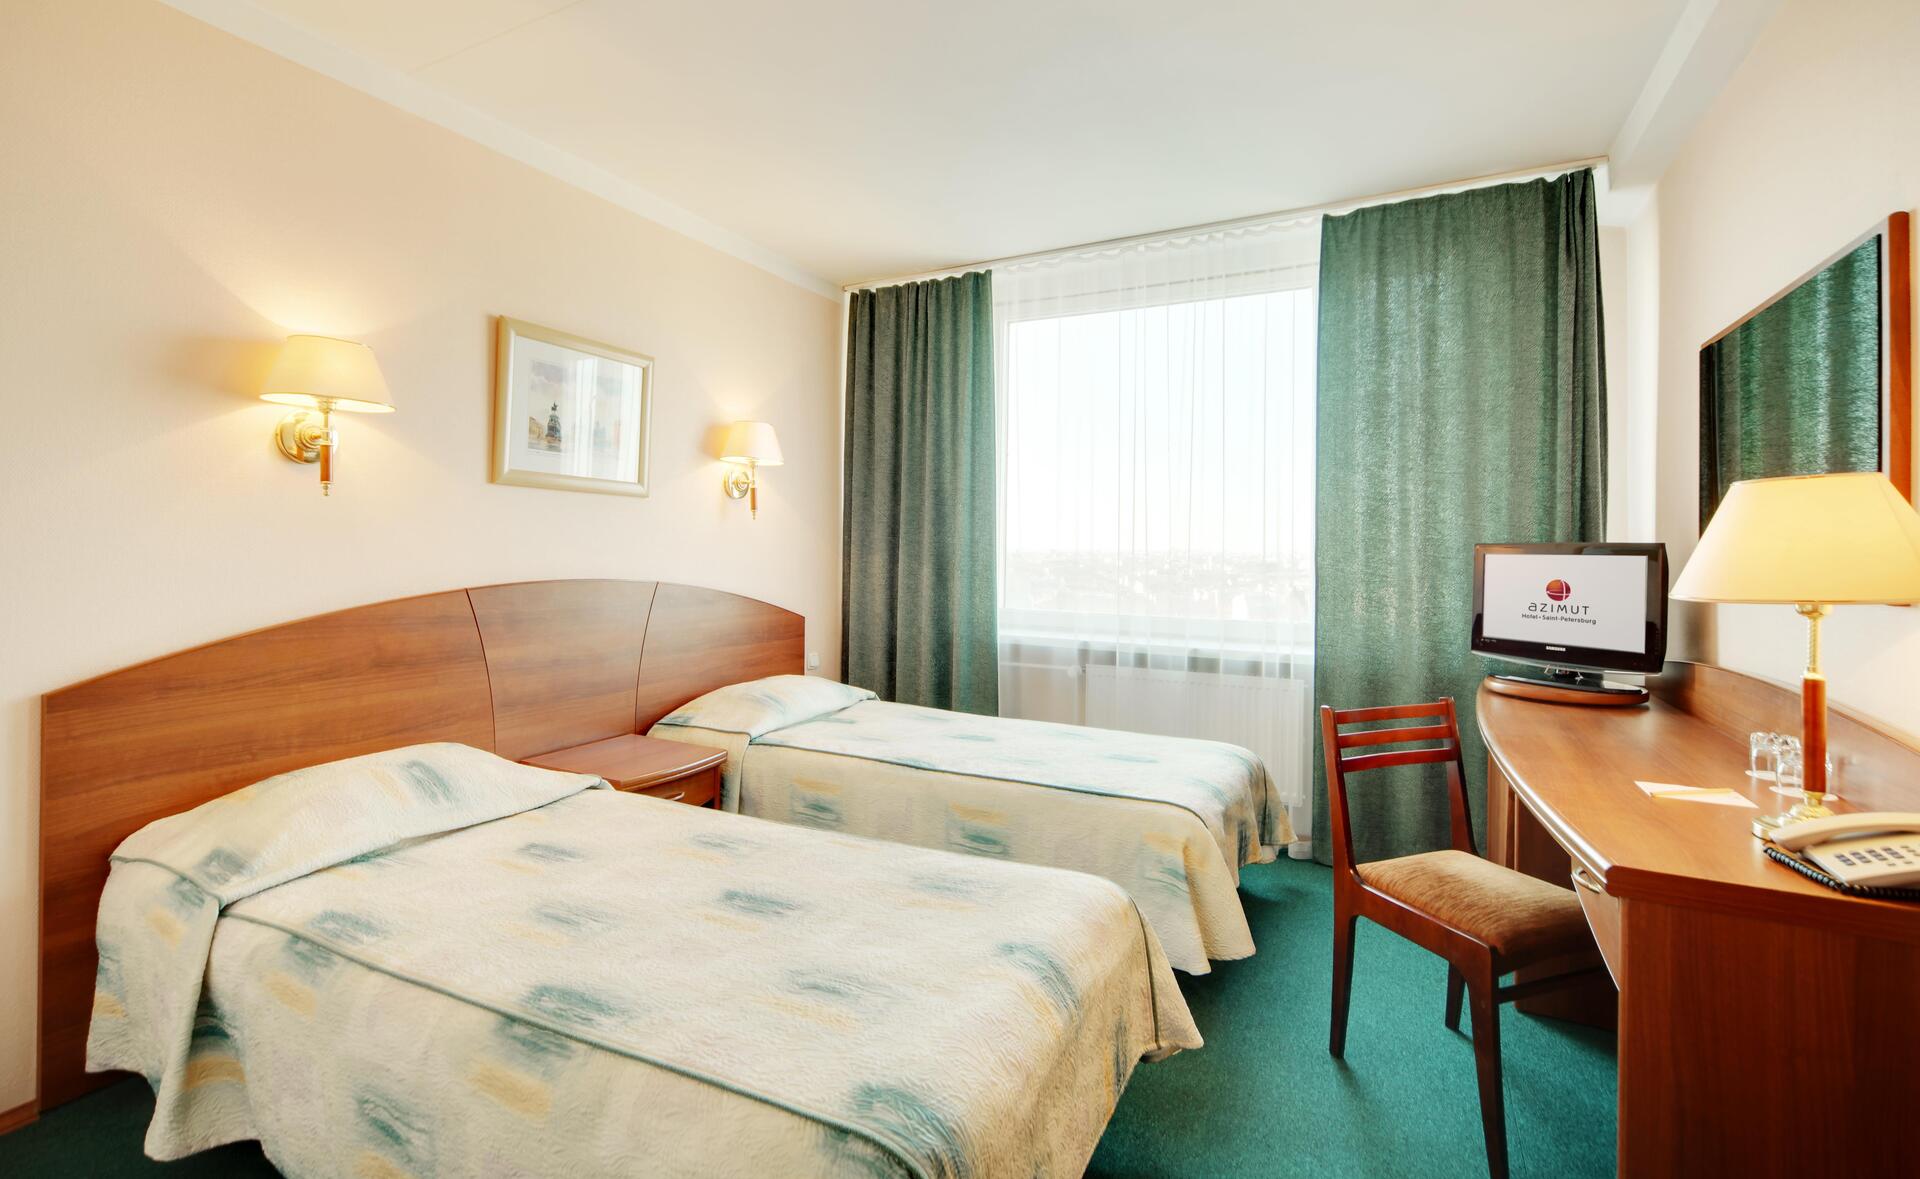 Azimut Saint-Petersburg Hotel : Room TWIN STANDARD